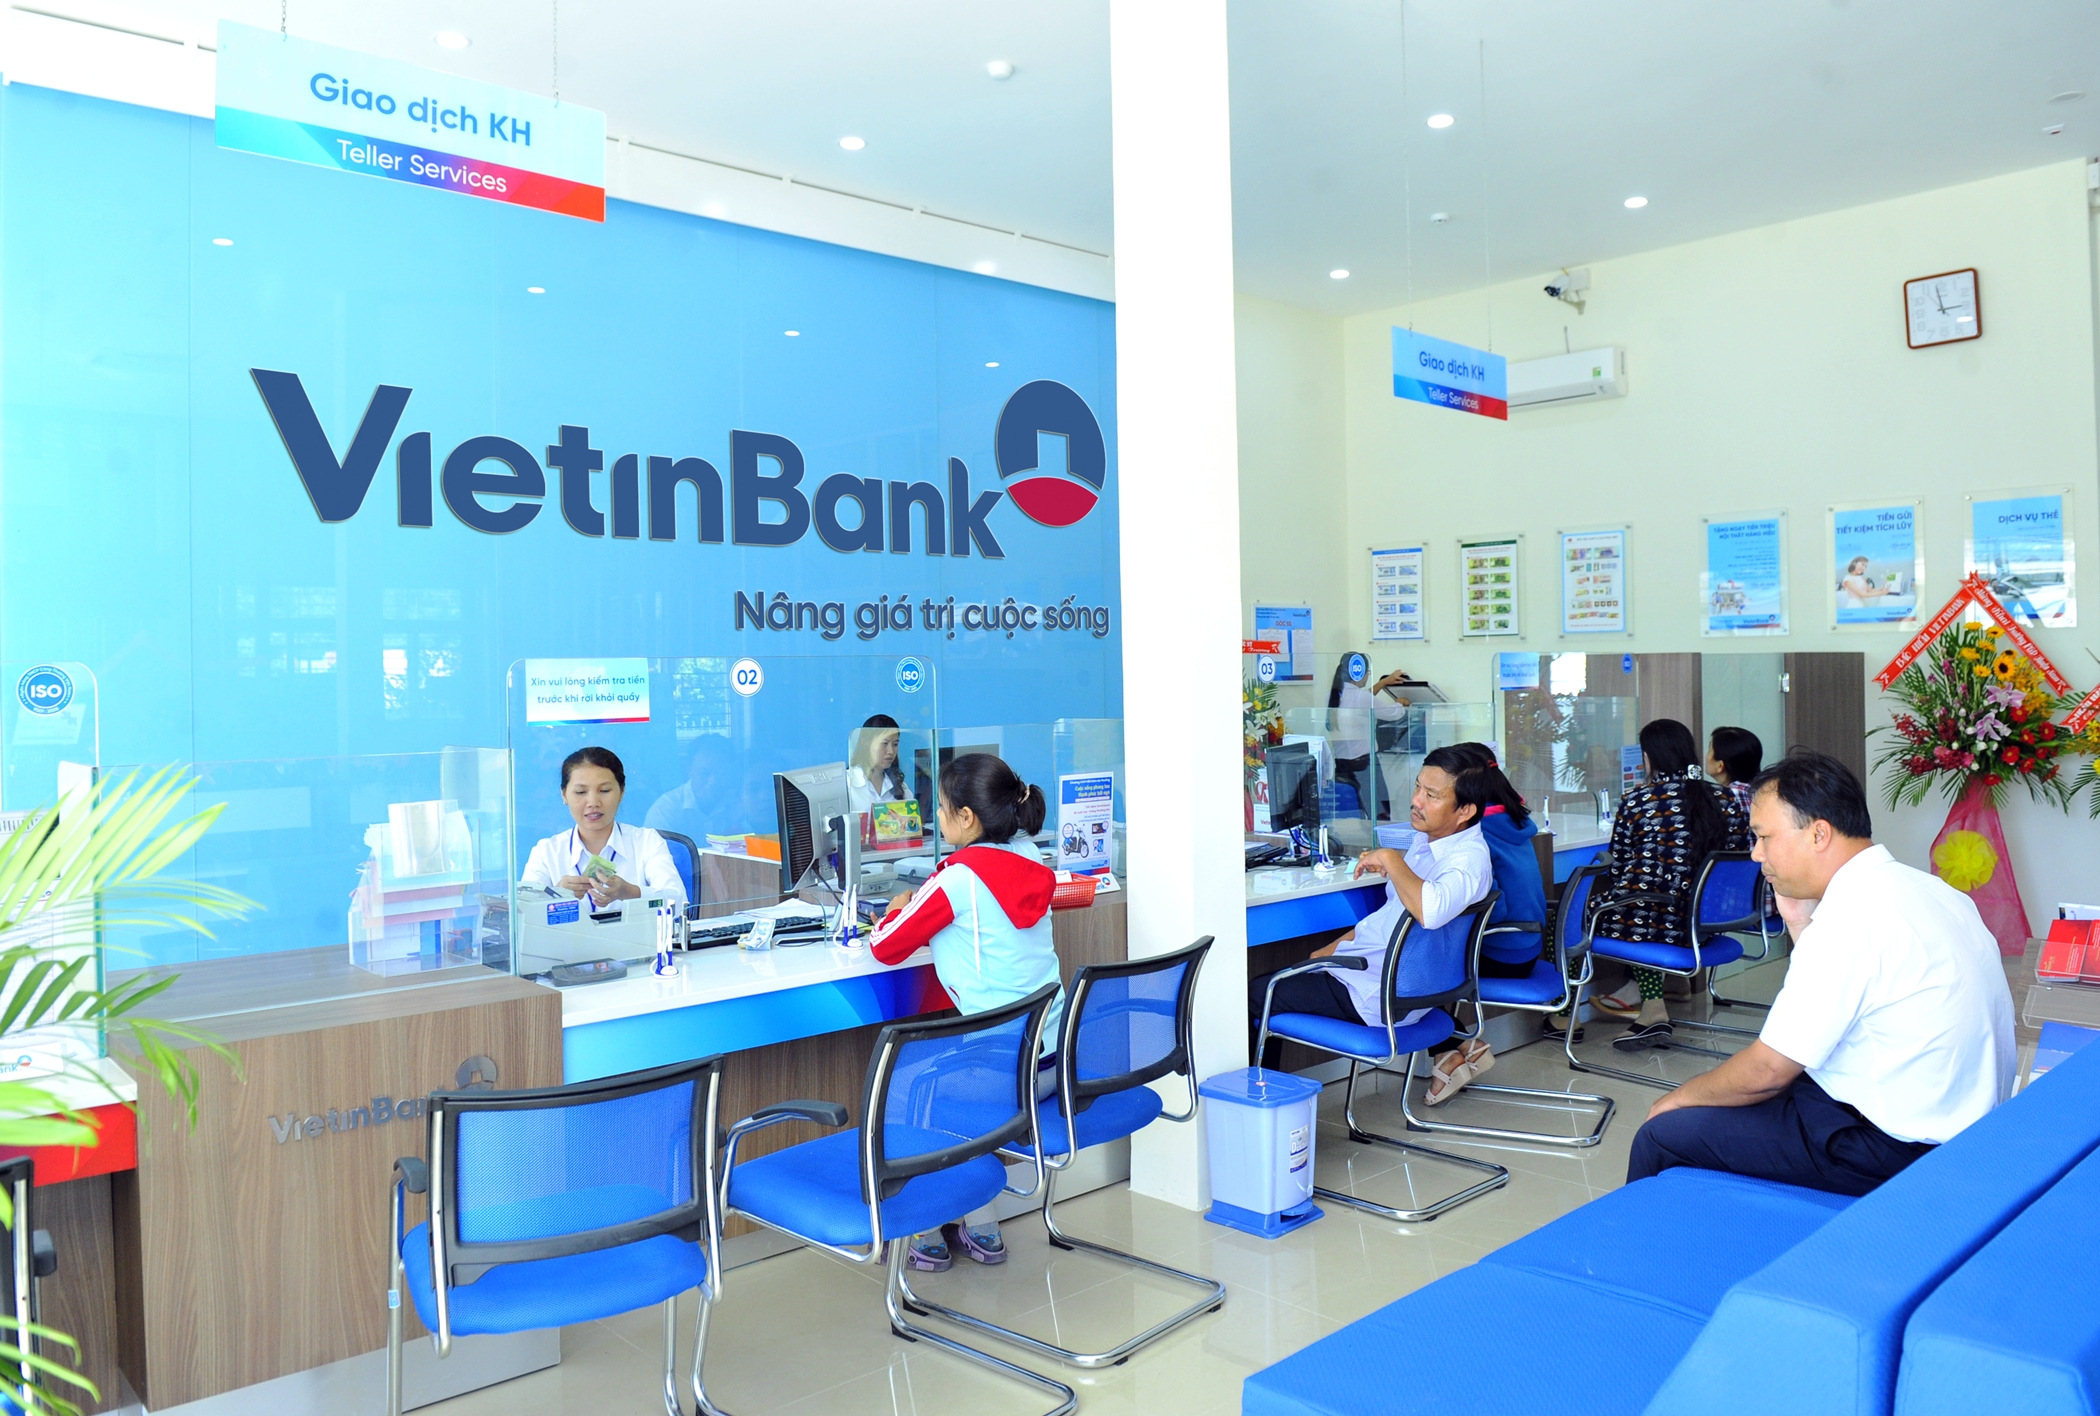 Hết quý III/2017, VietinBank báo lãi trước thuế đạt 7.232 tỷ đồng.